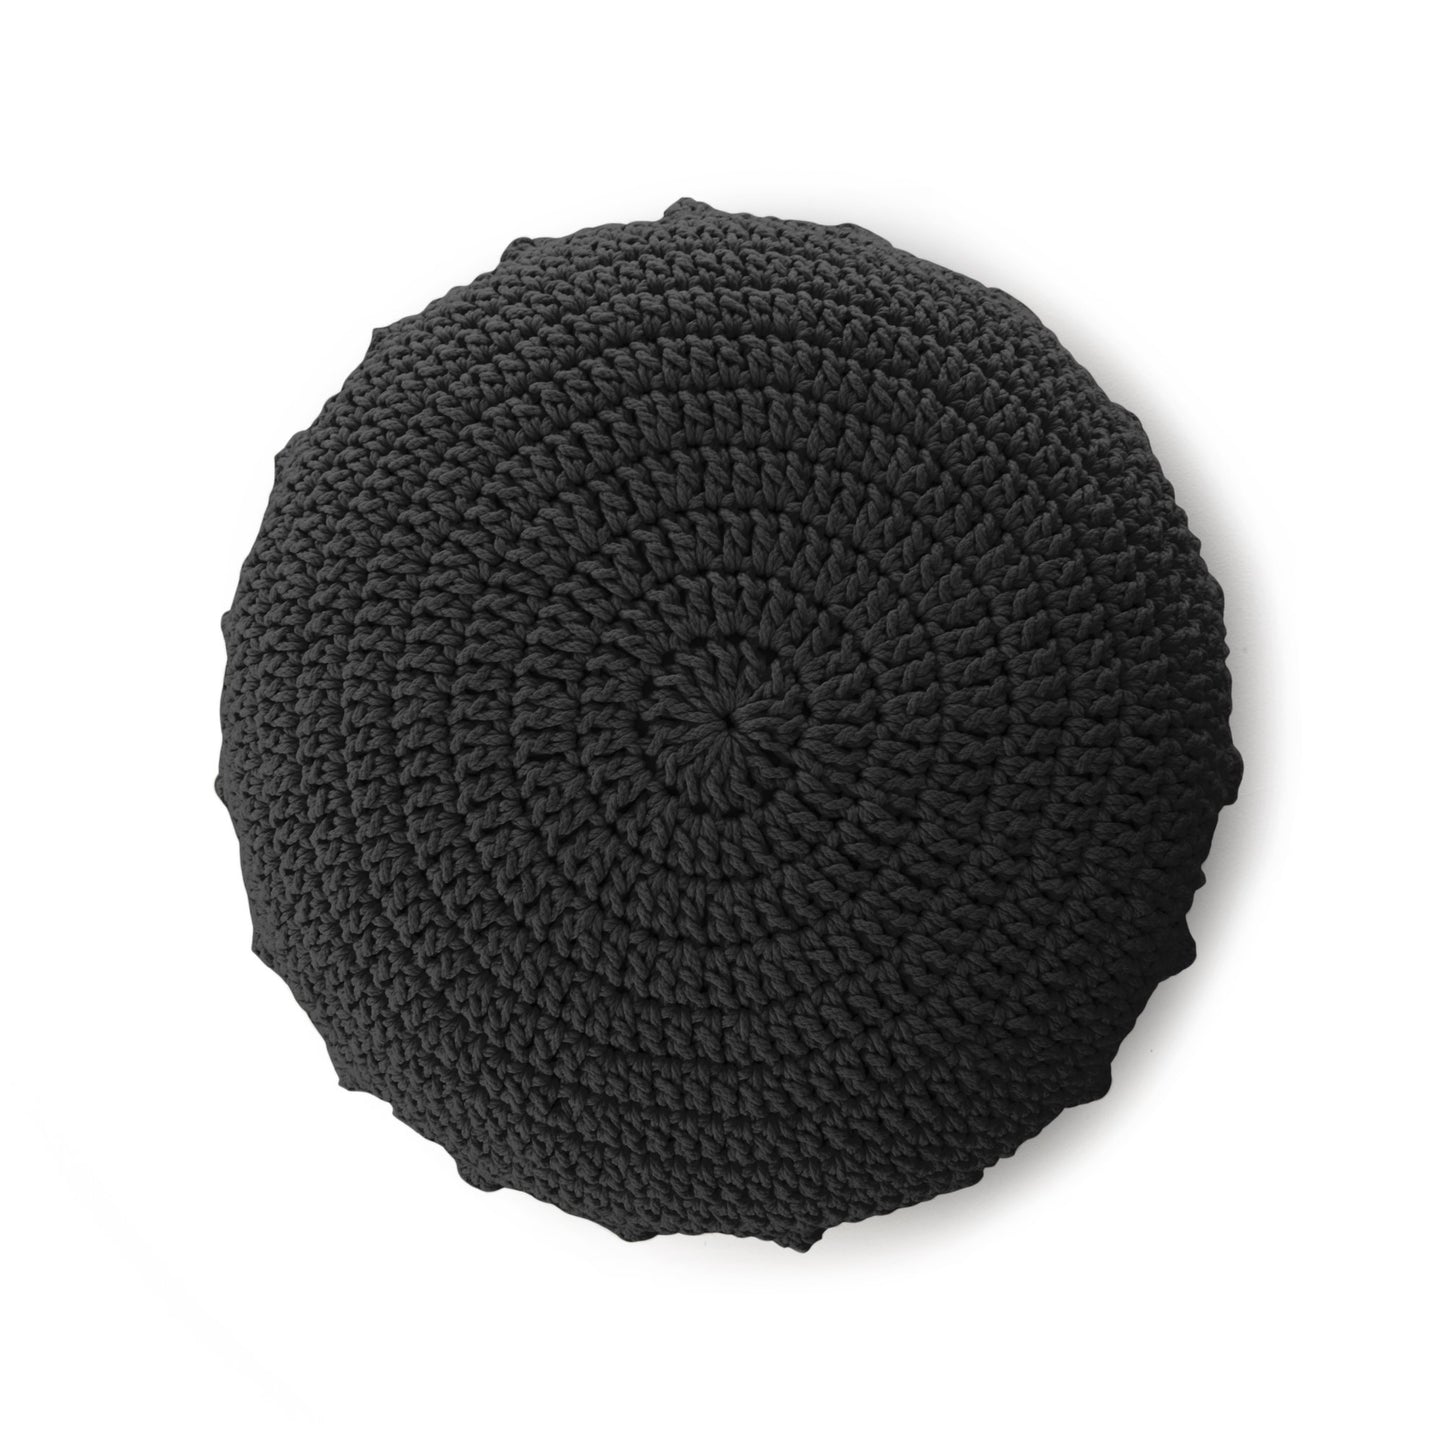 Puff Disco em crochê Preto, com fio 100% algodão.  Fechamento com zíper, possibilitando a remoção da capa para lavagem.  Dimensões: Altura - 20cm; Diâmetro - 85cm. 